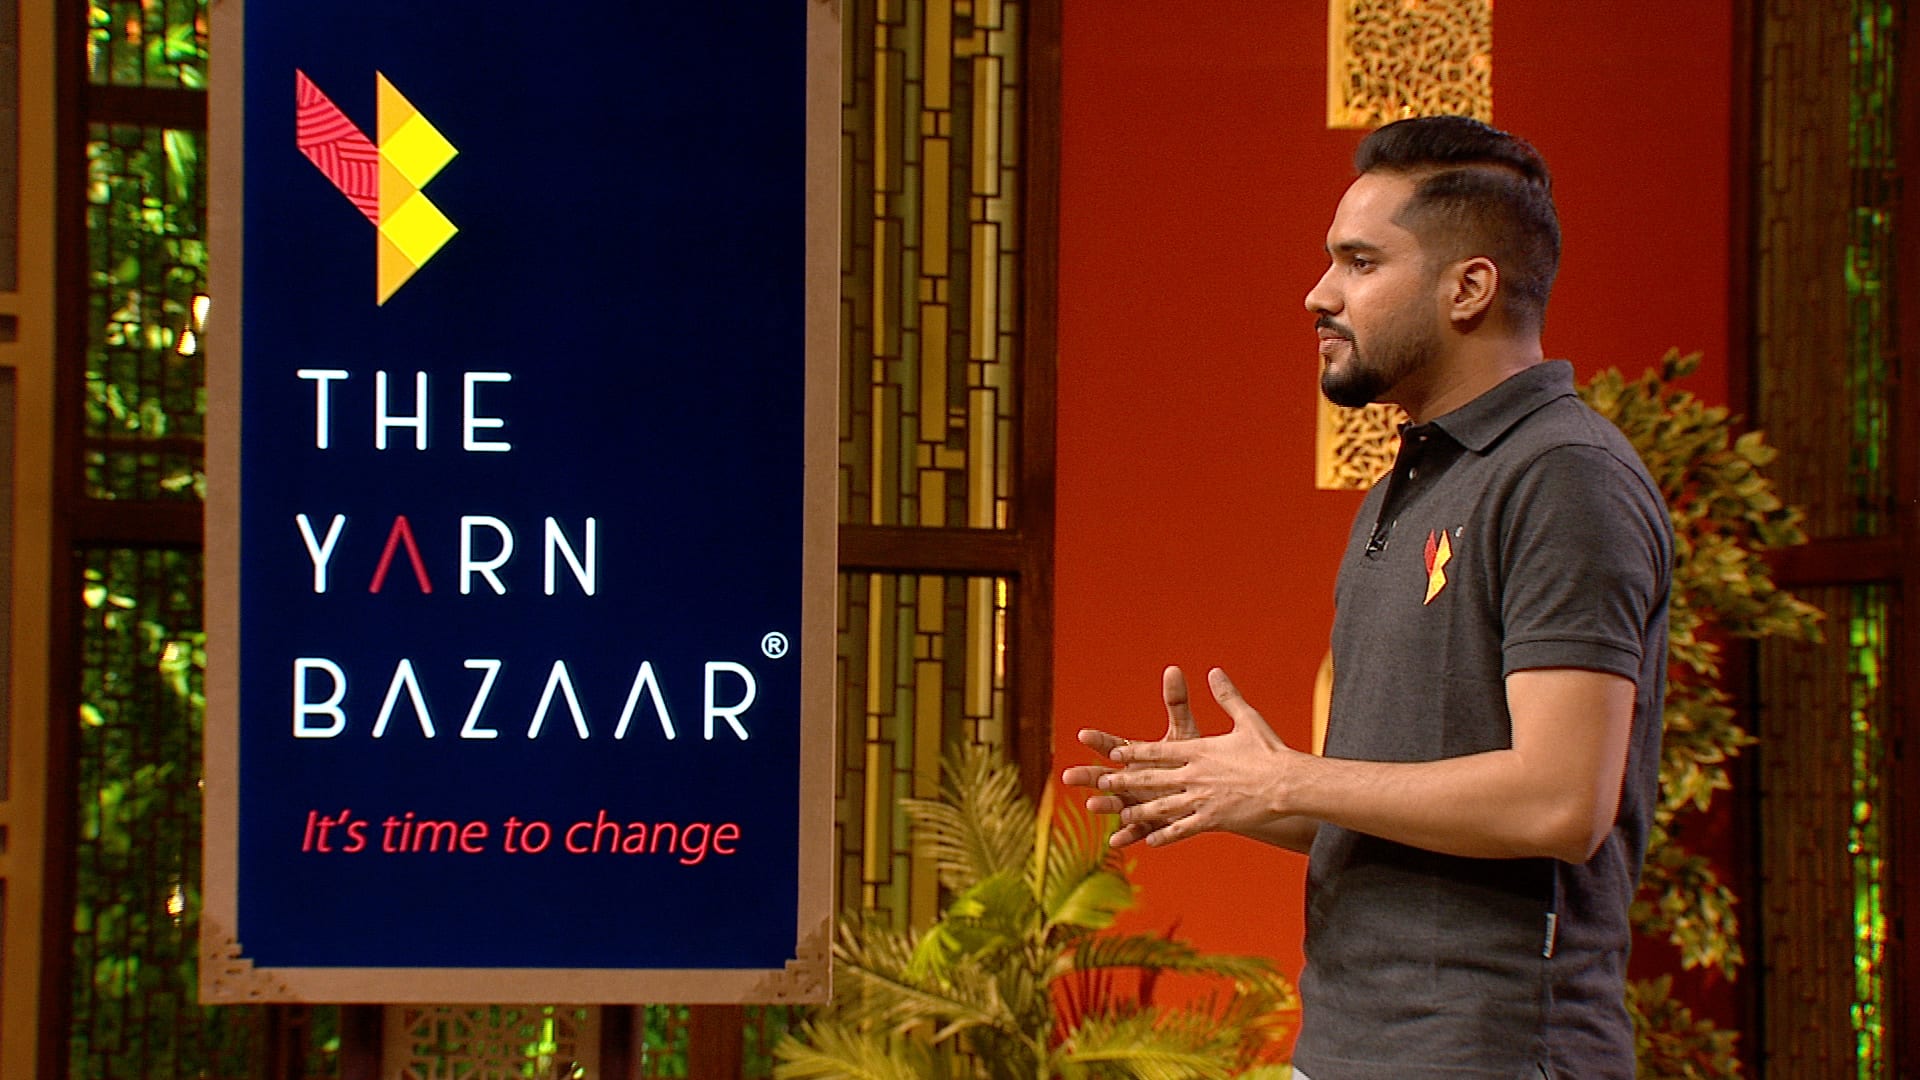 Pratik Gadia, Founder & CEO, The Yarn Bazaar